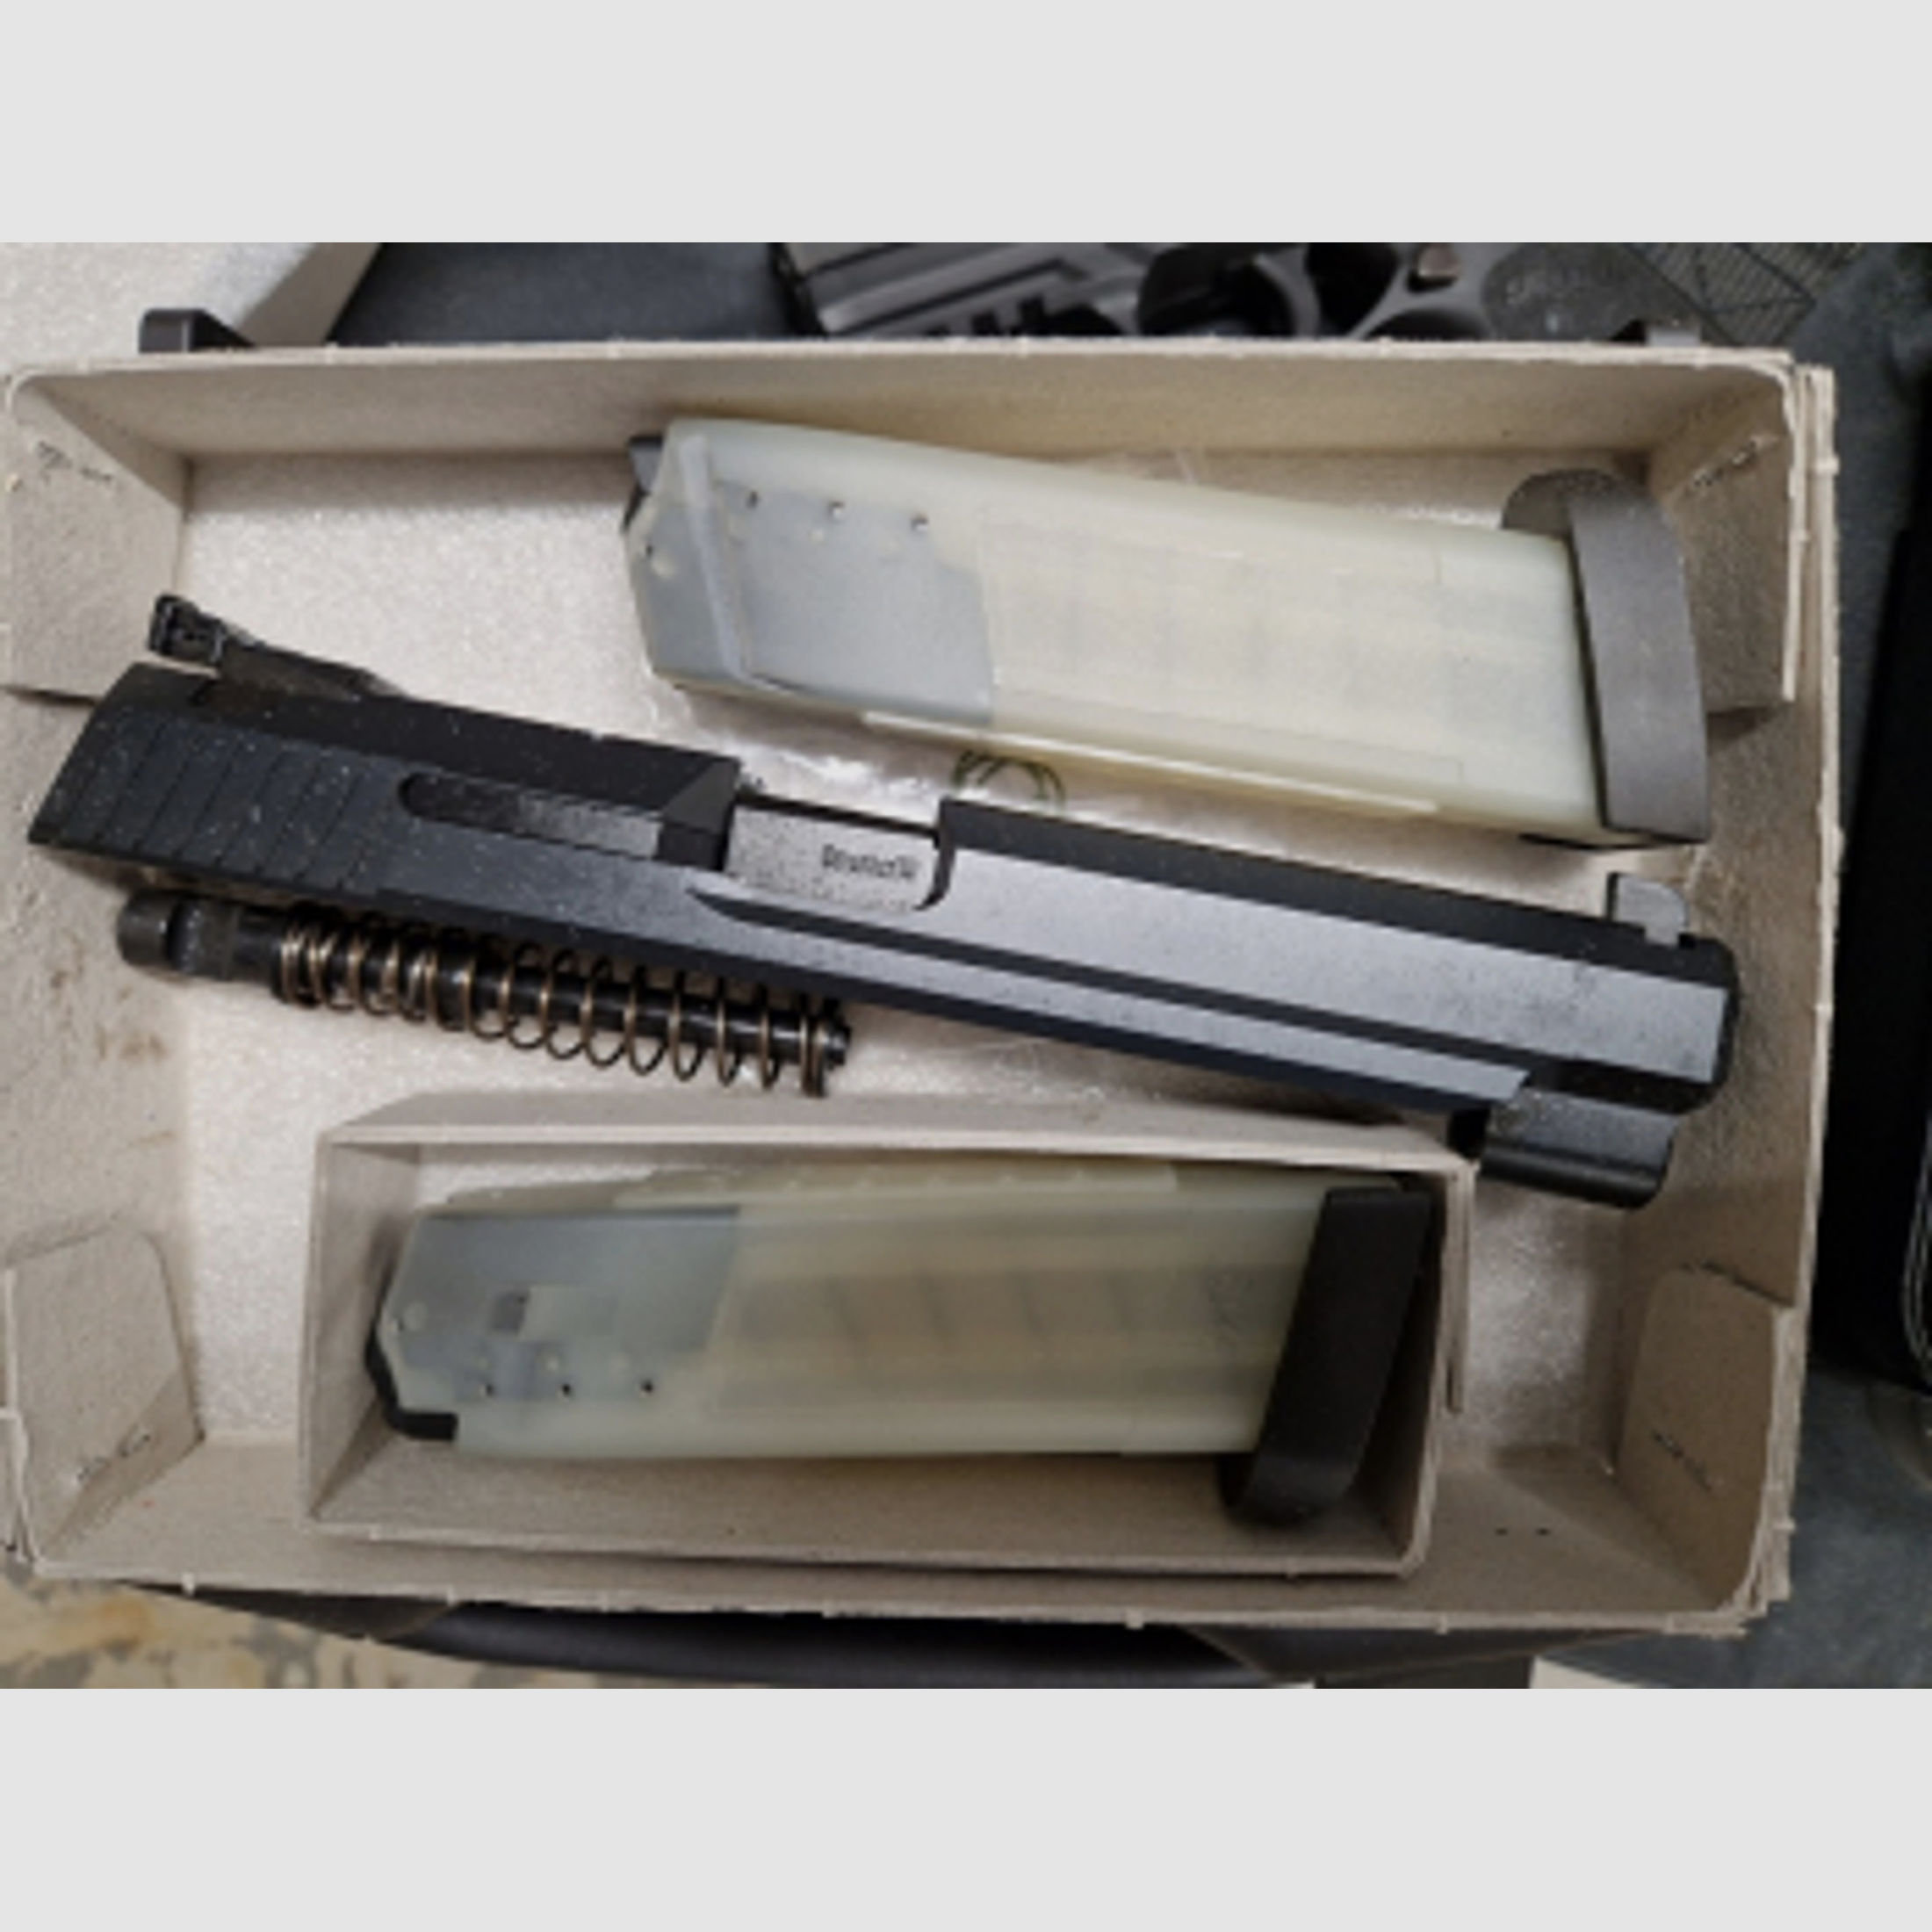 Heckler & Koch USP Expert Wechselsystem 9mm Luger